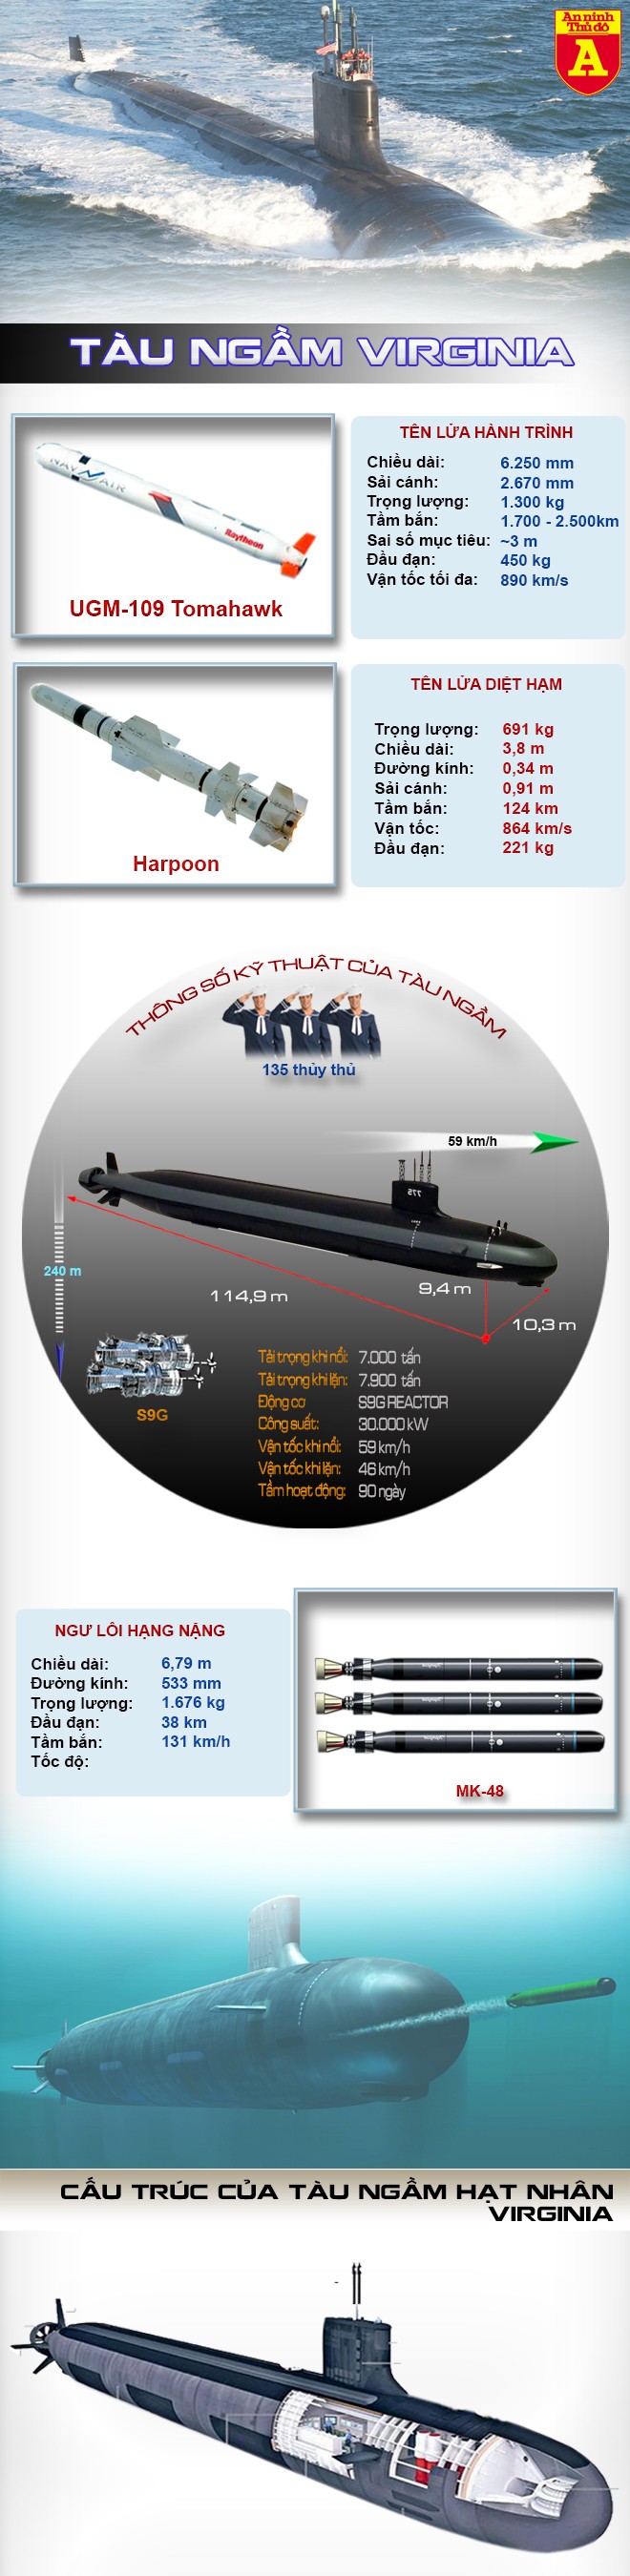 [Infographic] Mỹ hạ thủy siêu tàu ngầm hạt nhân, khẳng định vị thế siêu cường số 1 đại dương ảnh 2